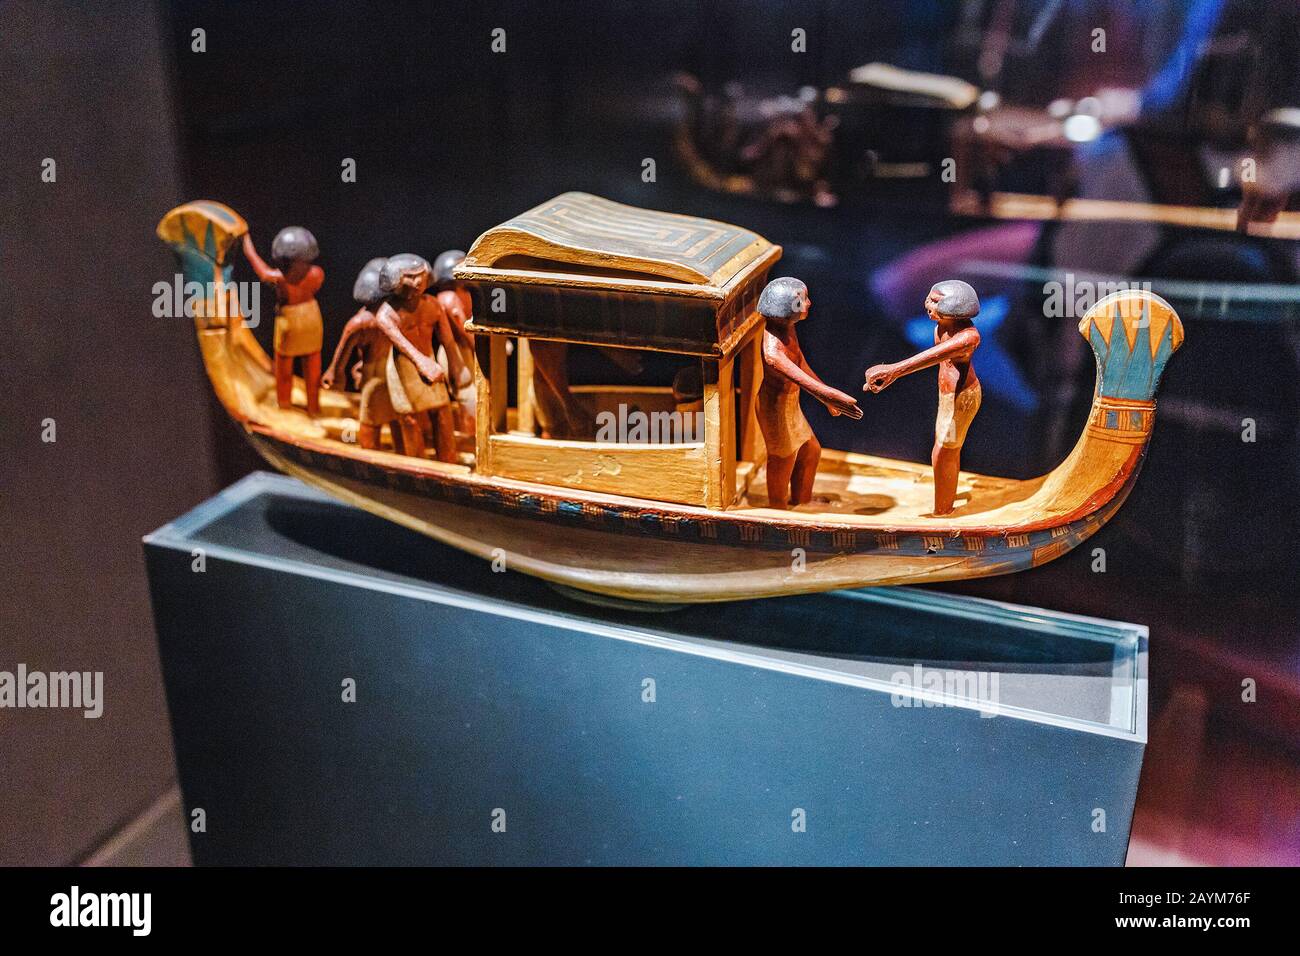 Berlino, GERMANIA - 19 MAGGIO 2018: Imbarcazione in legno con statuetta egiziana nel museo tecnico tedesco Foto Stock